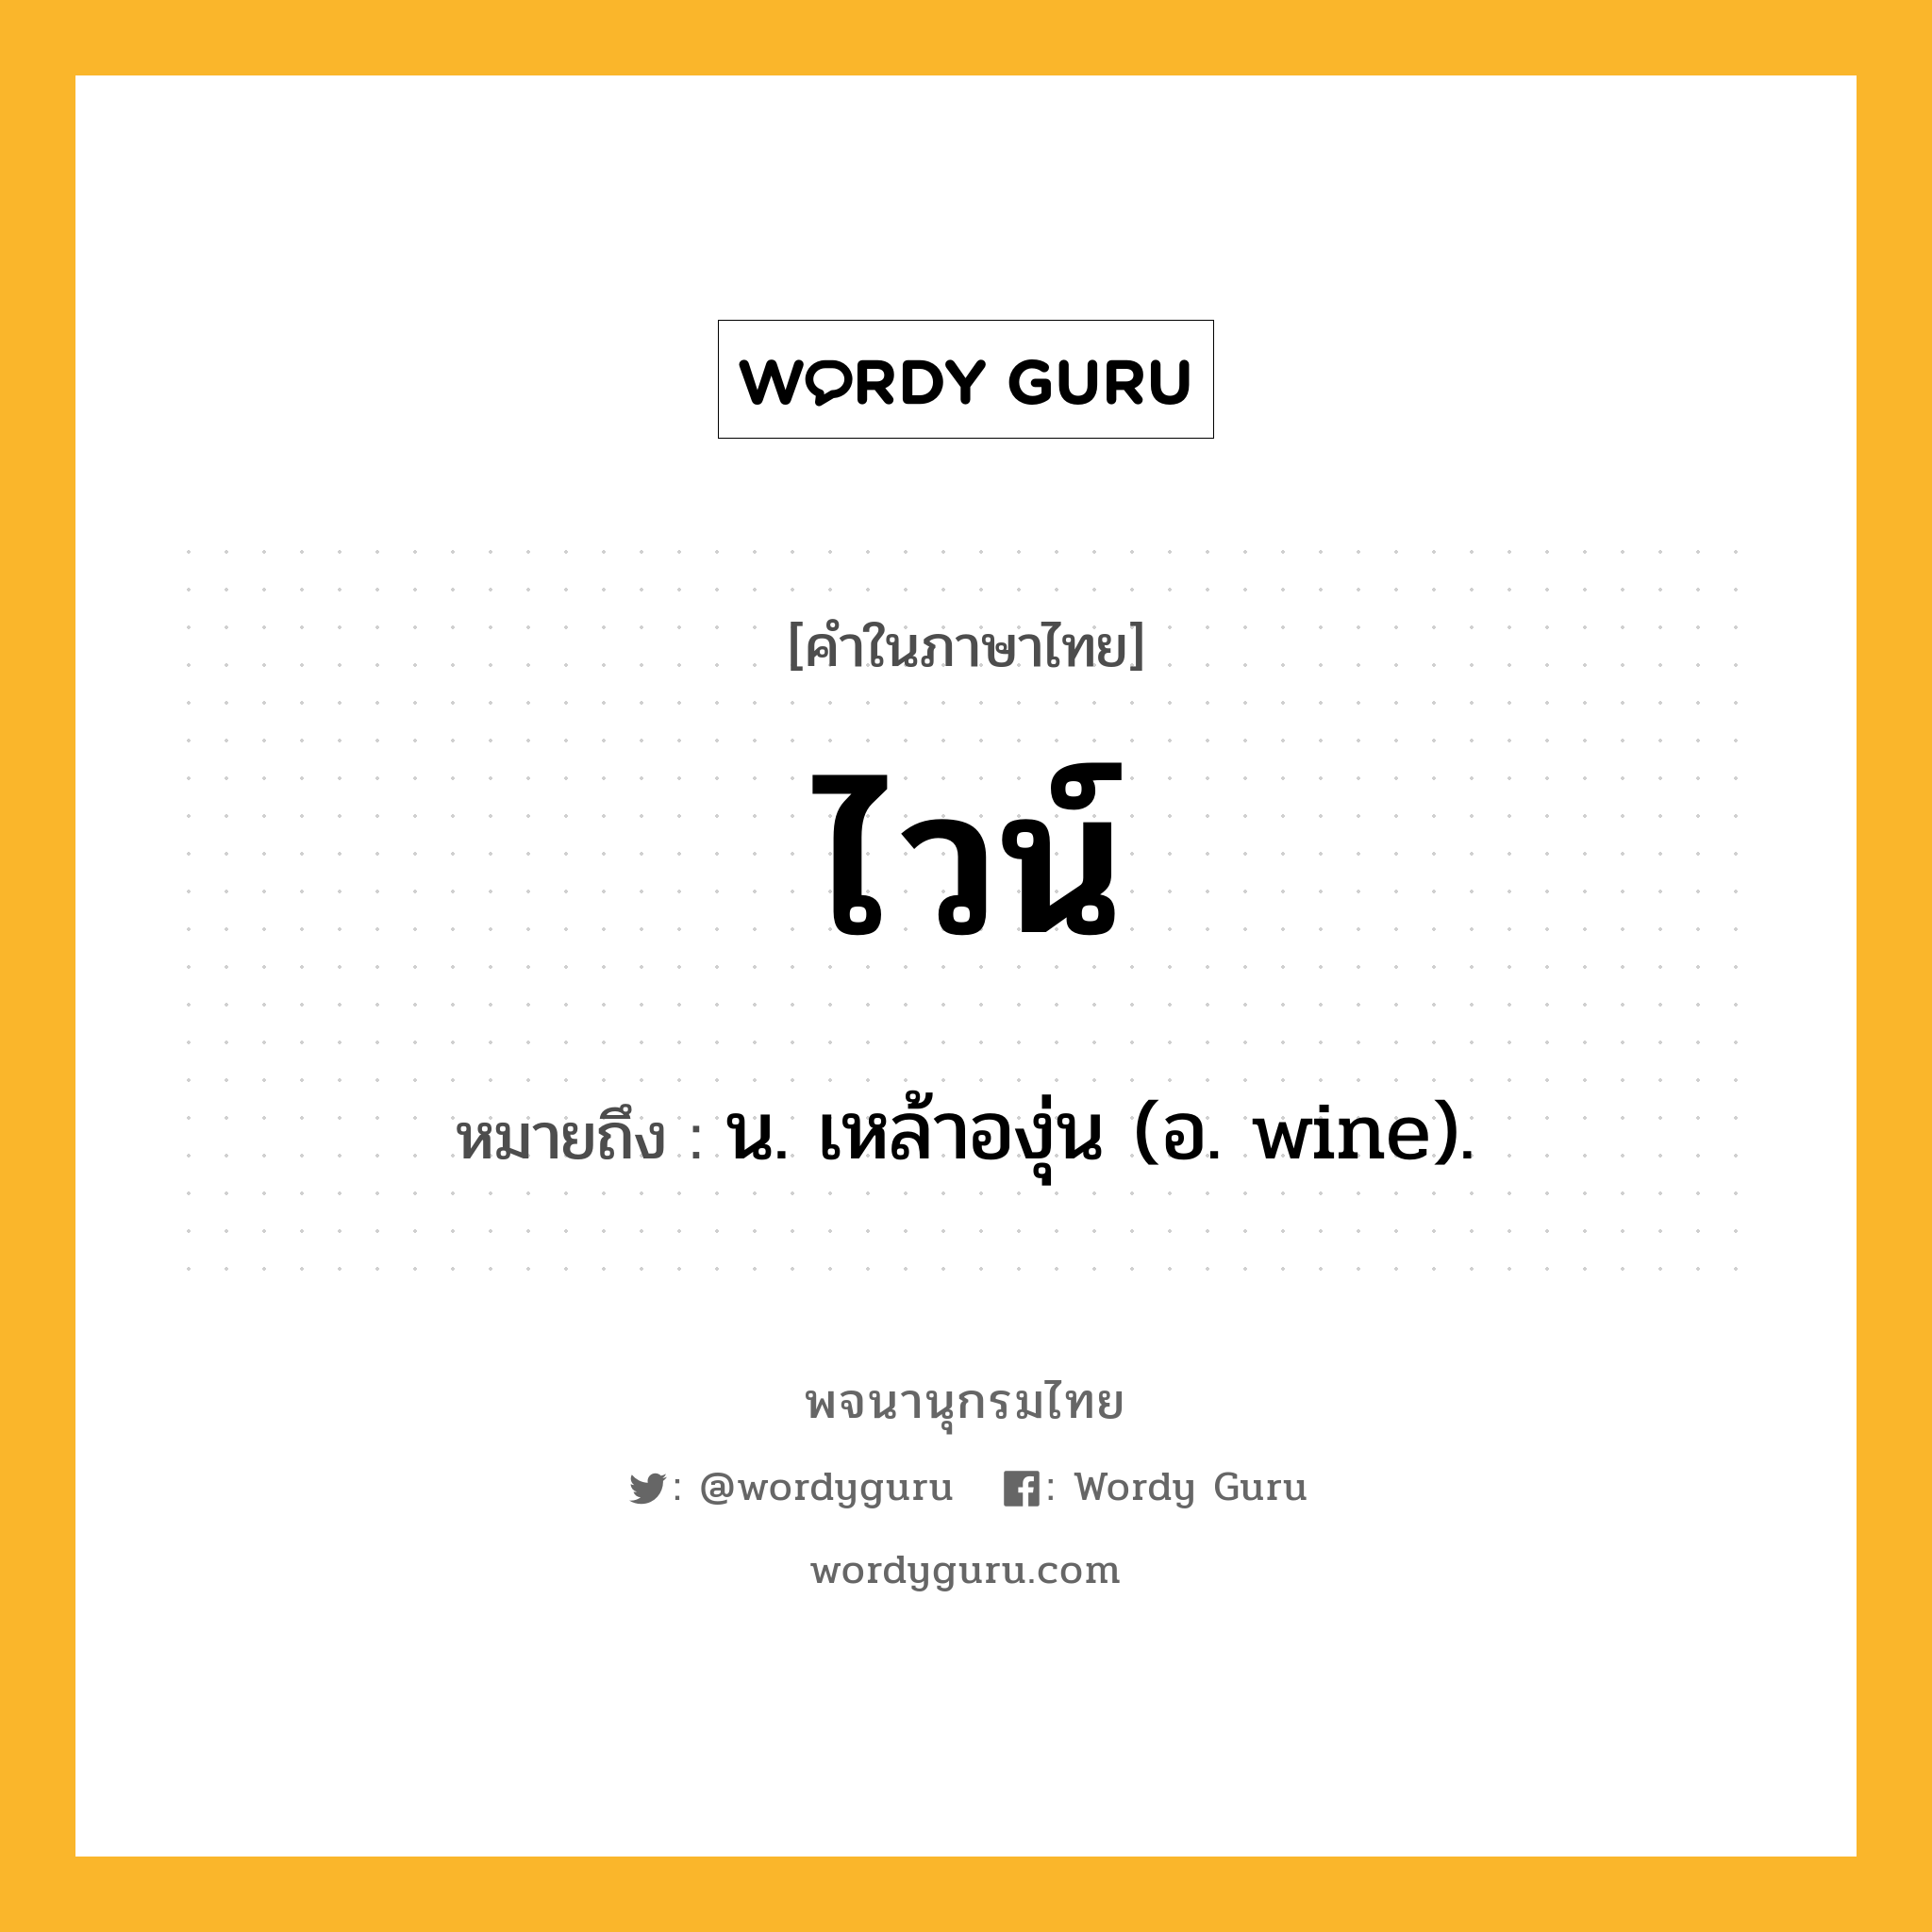 ไวน์ ความหมาย หมายถึงอะไร?, คำในภาษาไทย ไวน์ หมายถึง น. เหล้าองุ่น (อ. wine).